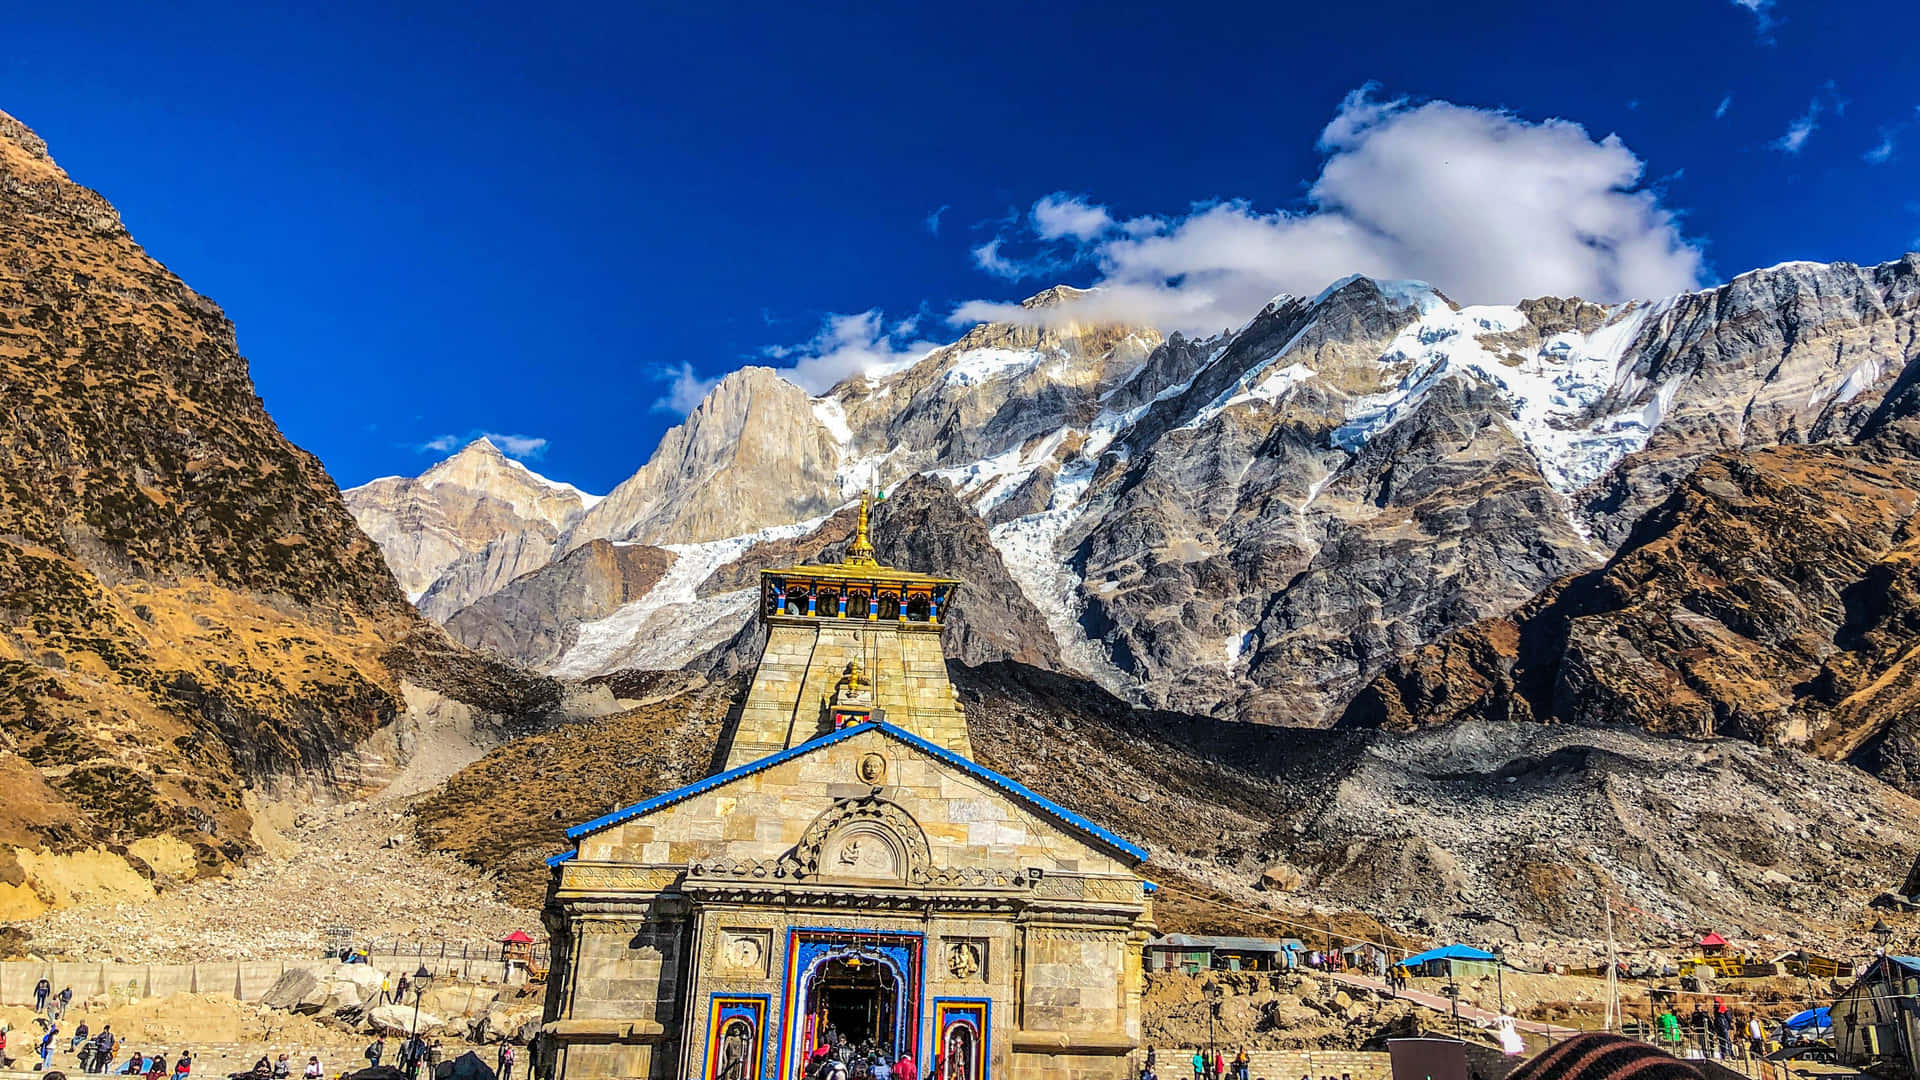 Besuchensie Das Berühmte Kedarnath, Um Die Wunderschöne Landschaft Des Himalaya Zu Bewundern.